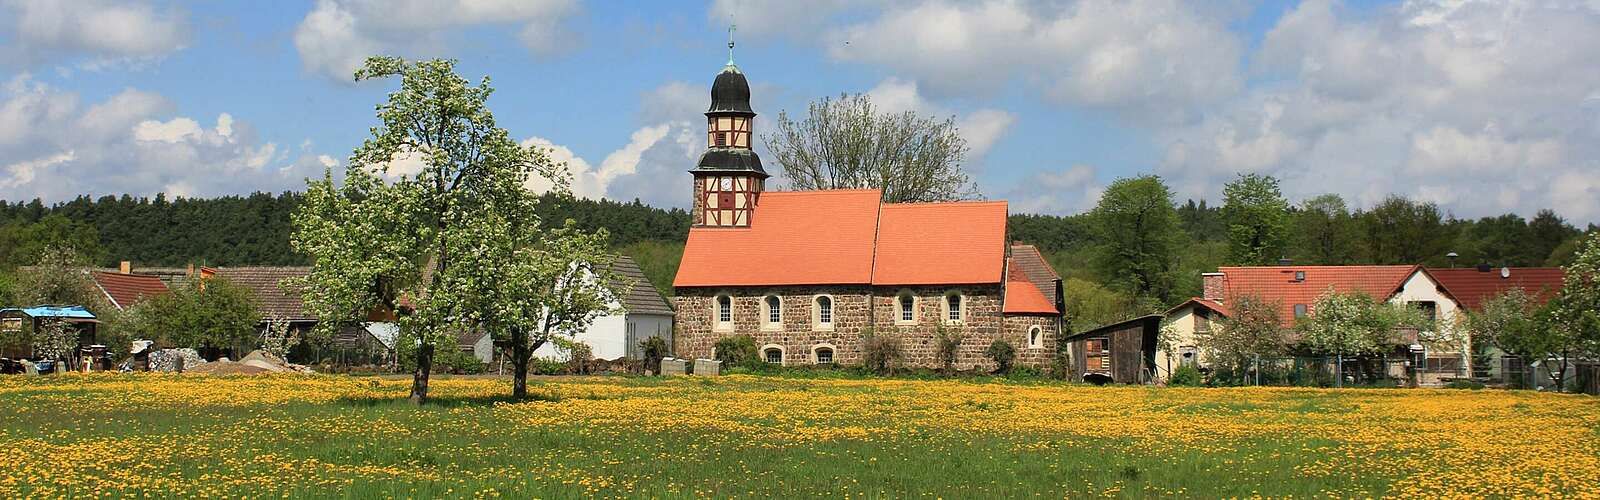 Blick auf die Dorfkirche Raben